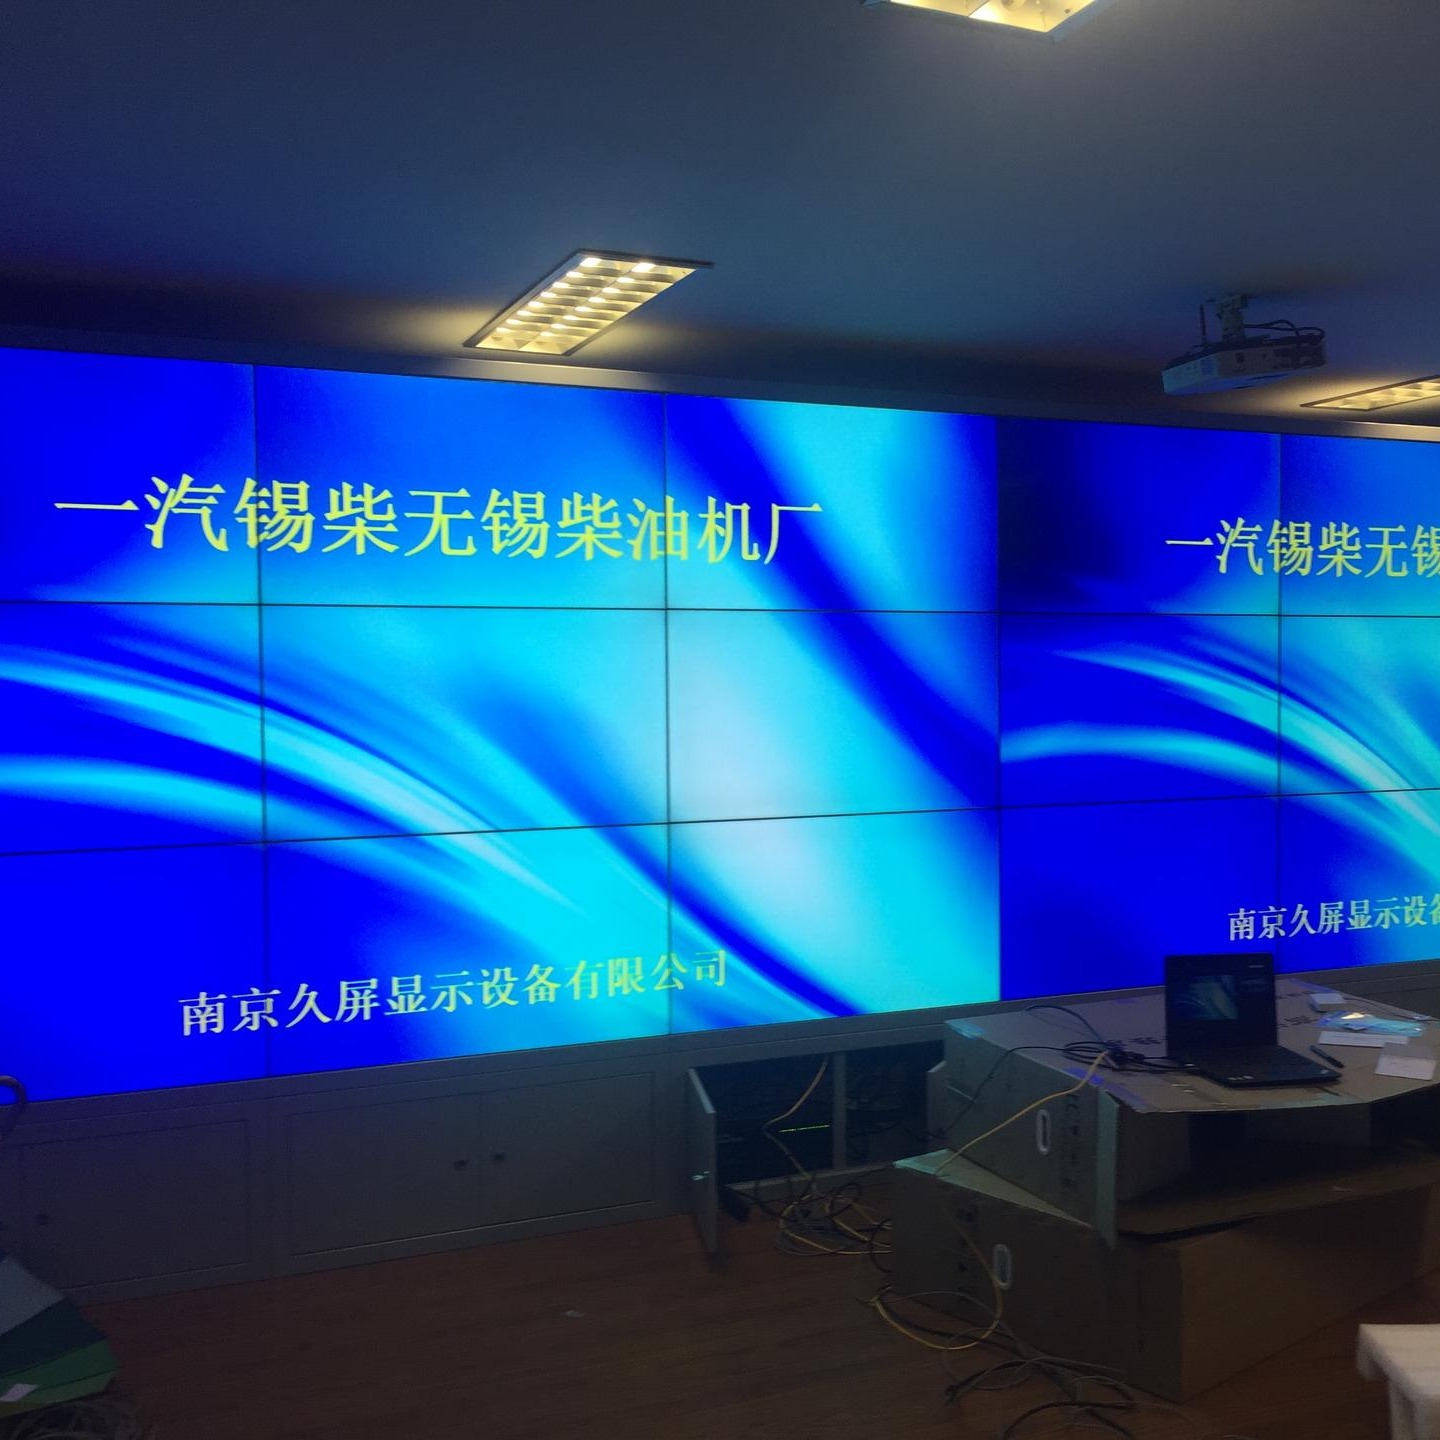 安徽拼接屏公司 55寸液晶拼接屏 LCD大屏幕显示 拼接大屏 久屏显示